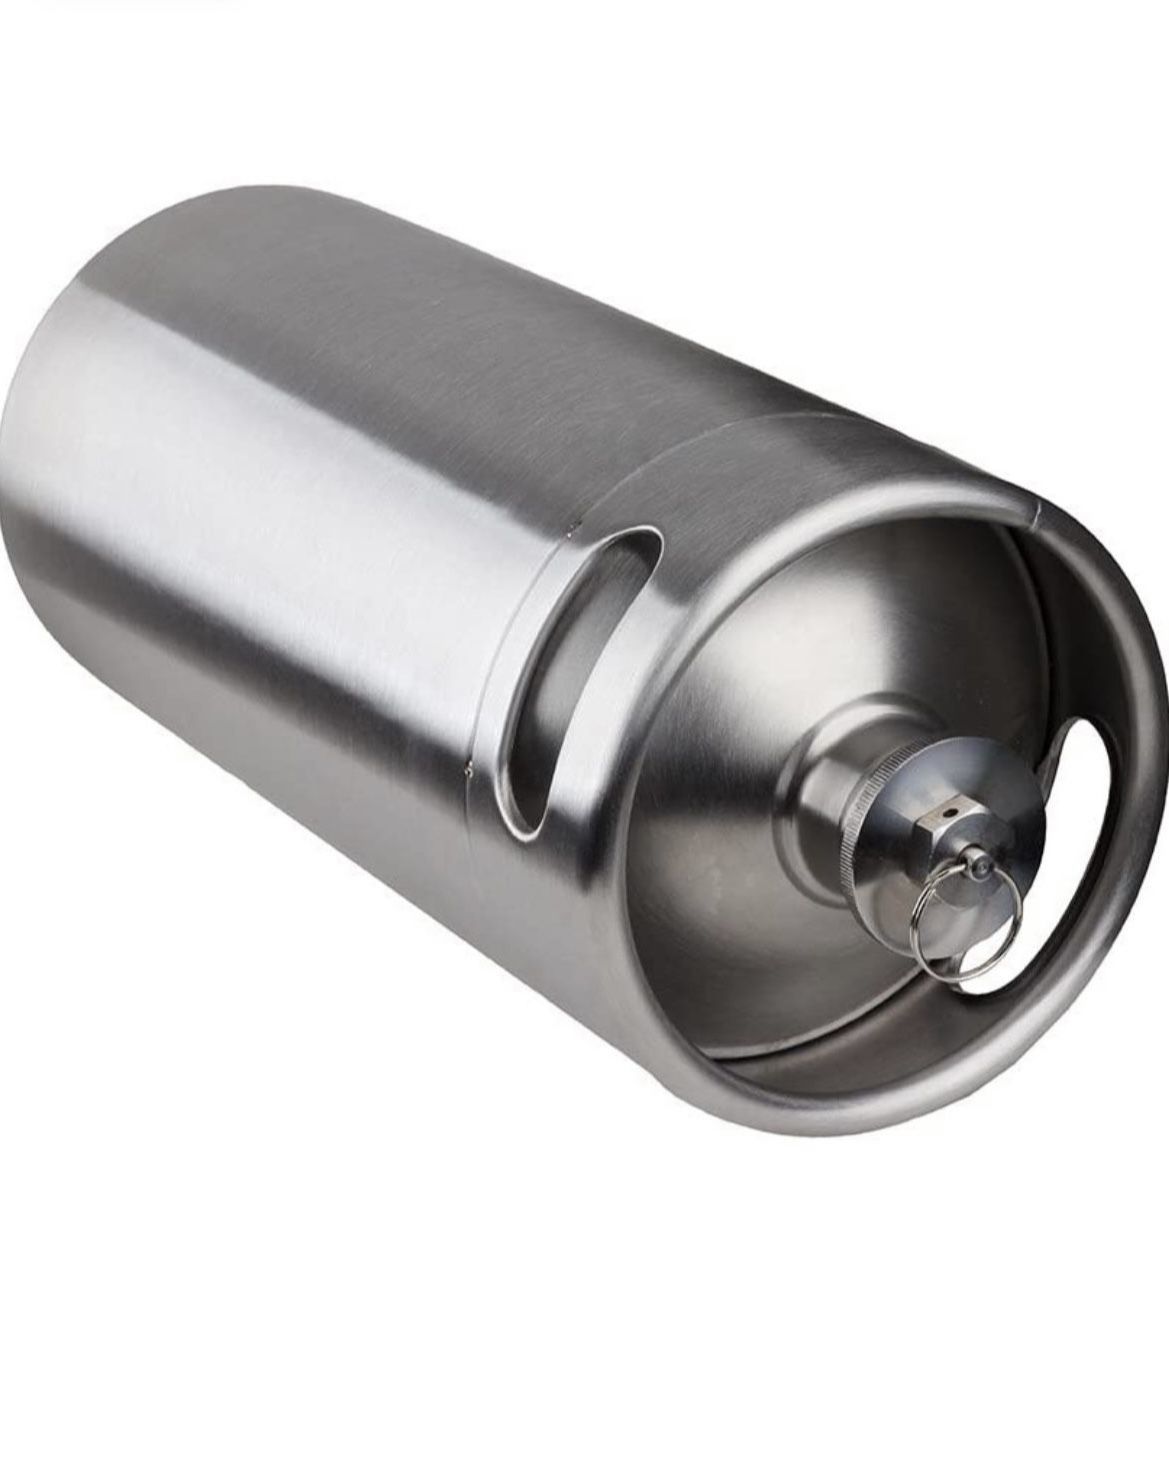 128 oz Stainless Steel Mini Keg Portable Beer Craft Beer Barrel